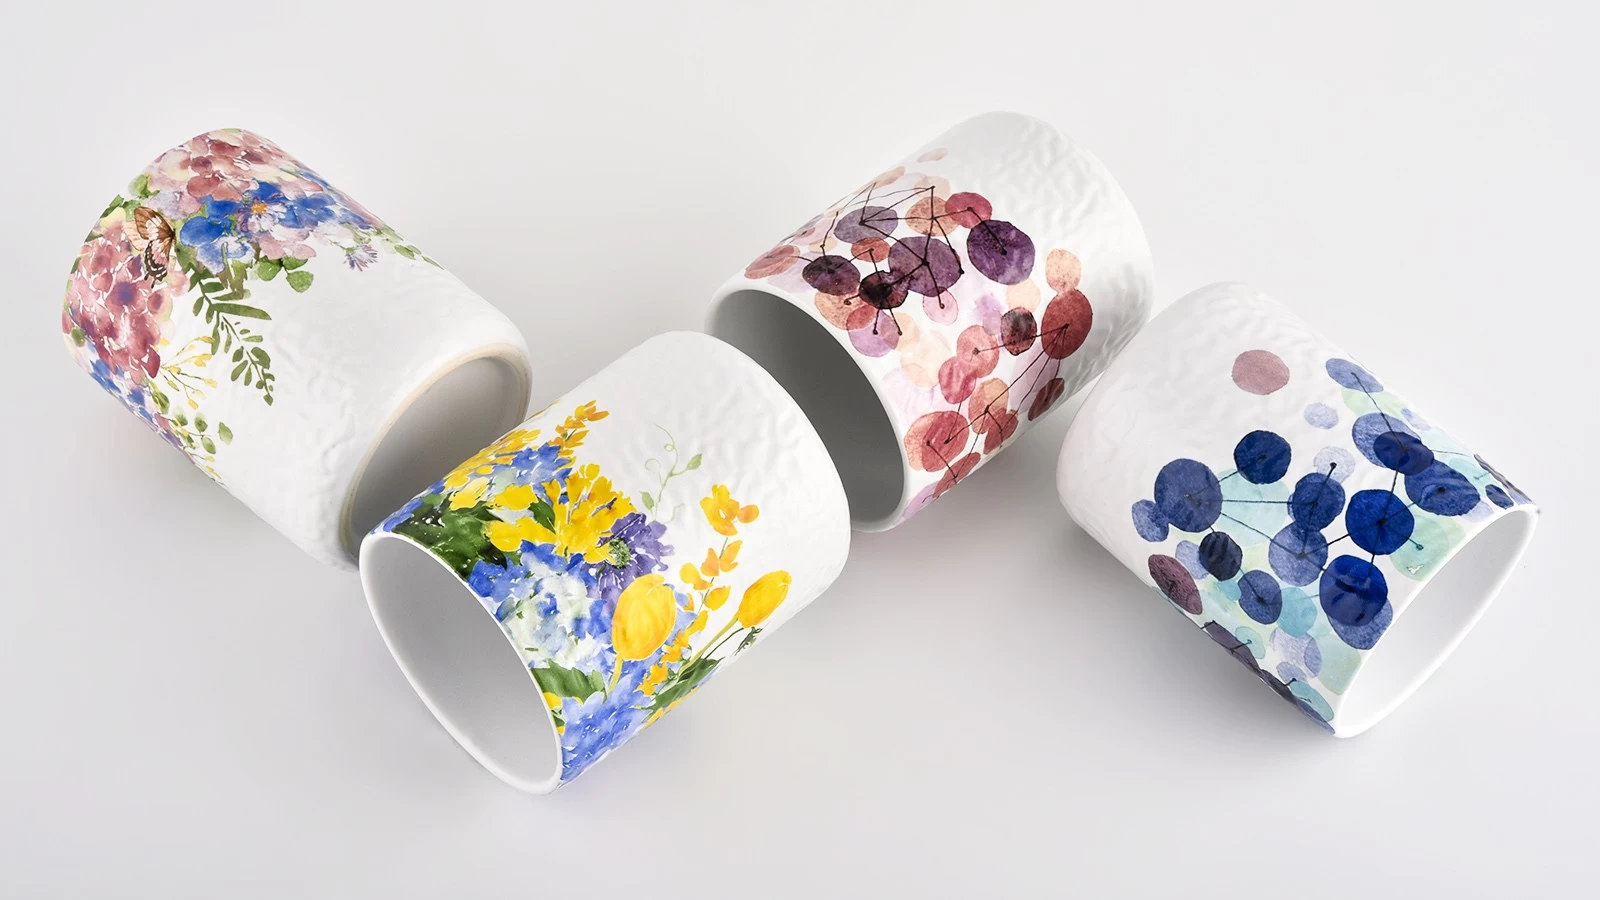 Unique applique printing luxury empty ceramic candle jars